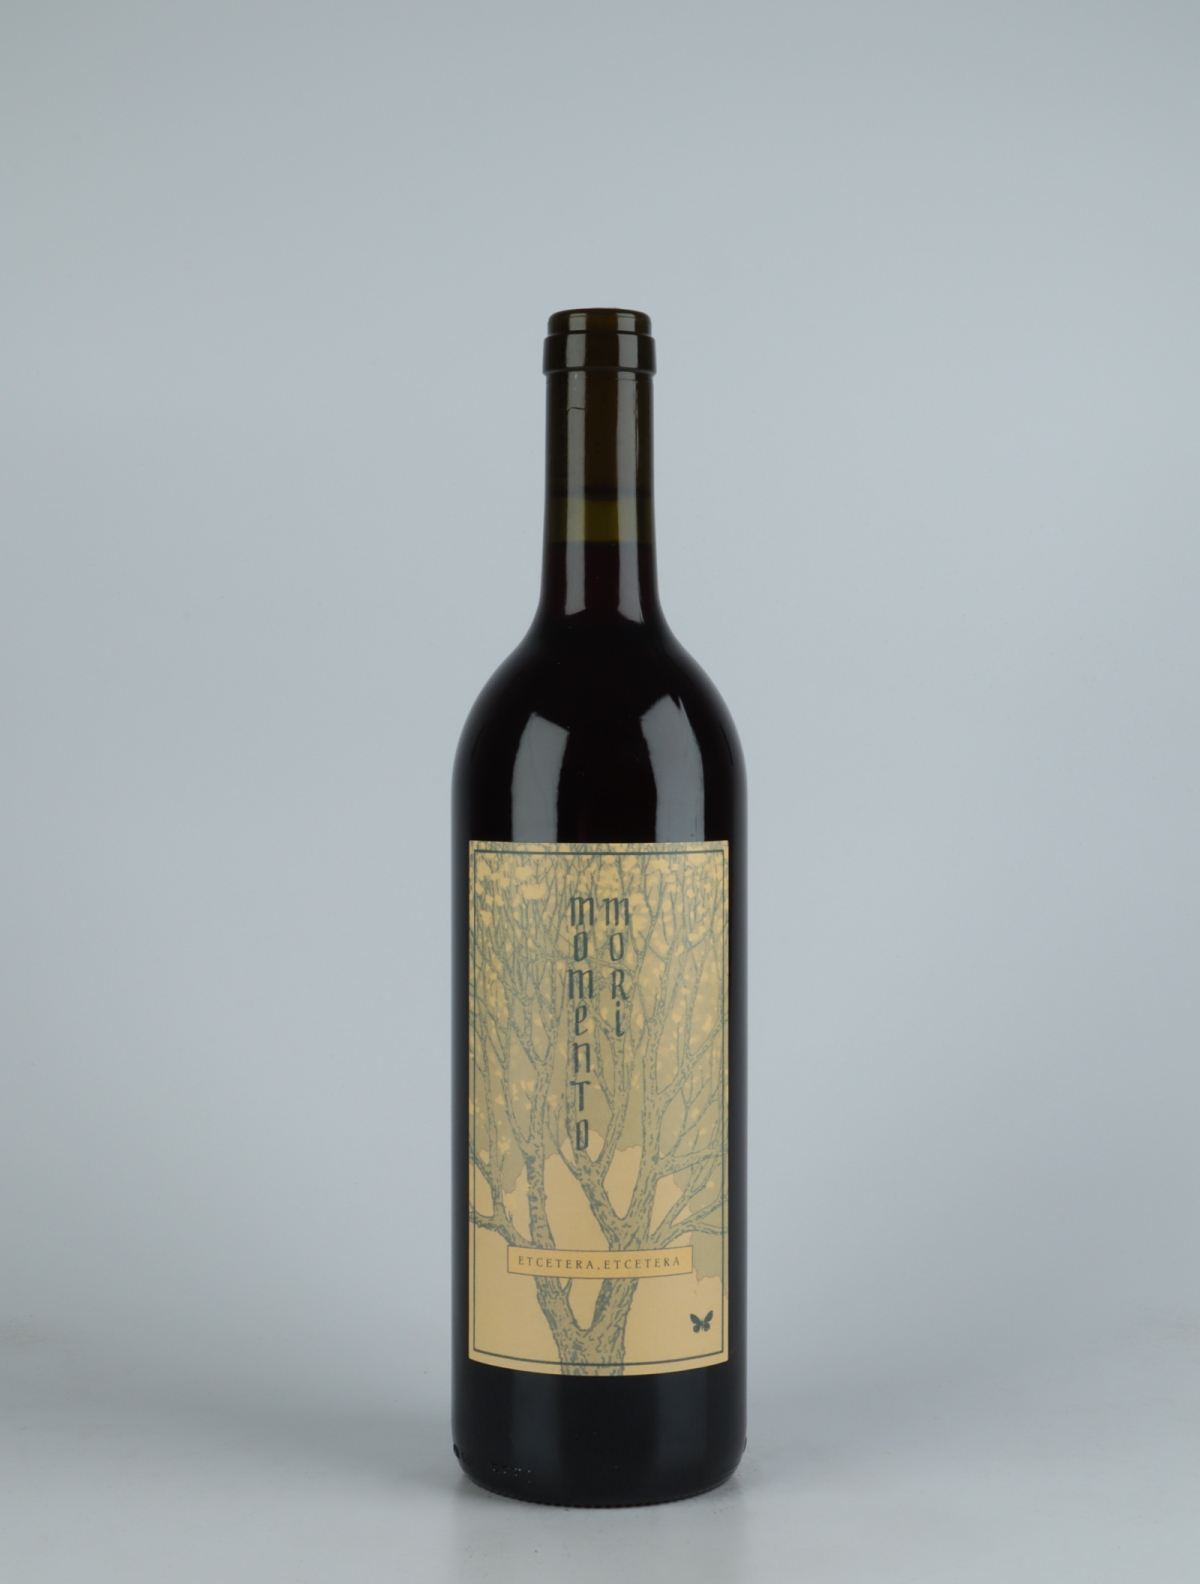 A bottle 2019 Etc Etc Red wine from Momento Mori, Victoria in Australia